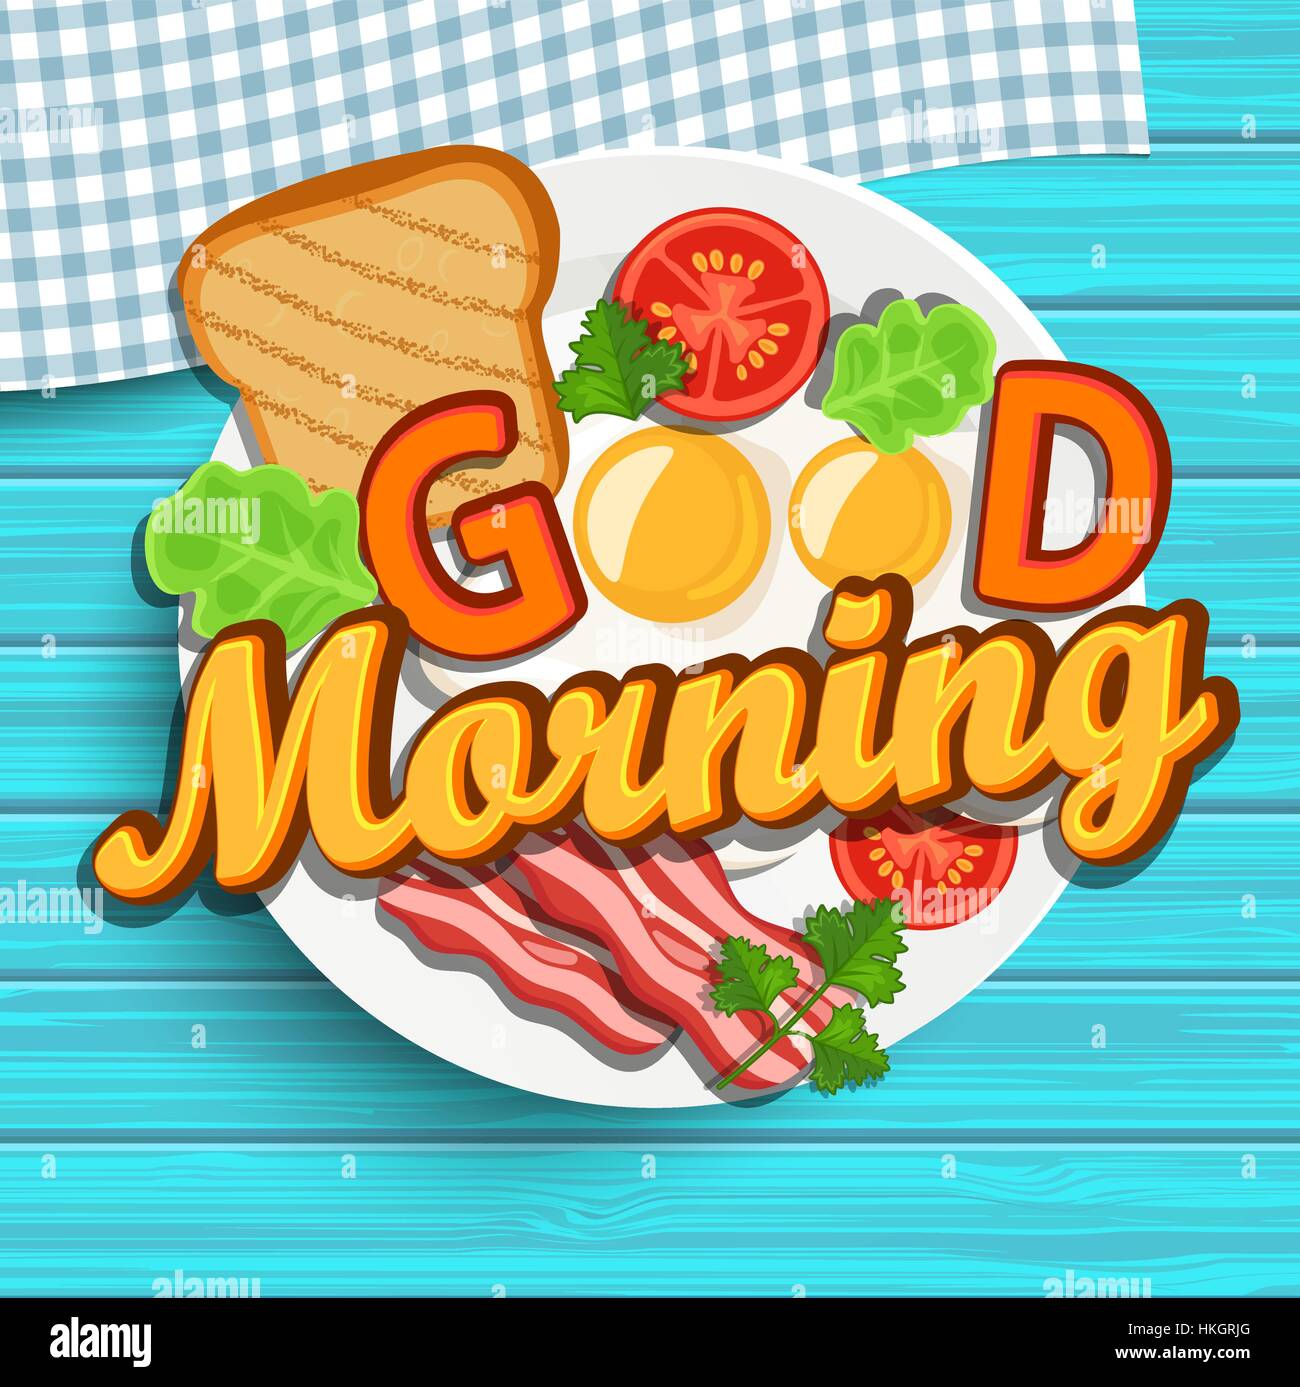 Guten Morgen Frühstück - Tomaten, Speck, Spiegelei und Toast. Ansicht von oben. Blaue Holzstruktur. Schriftzug - guten Morgen, Vektor-Illustration. Stock Vektor